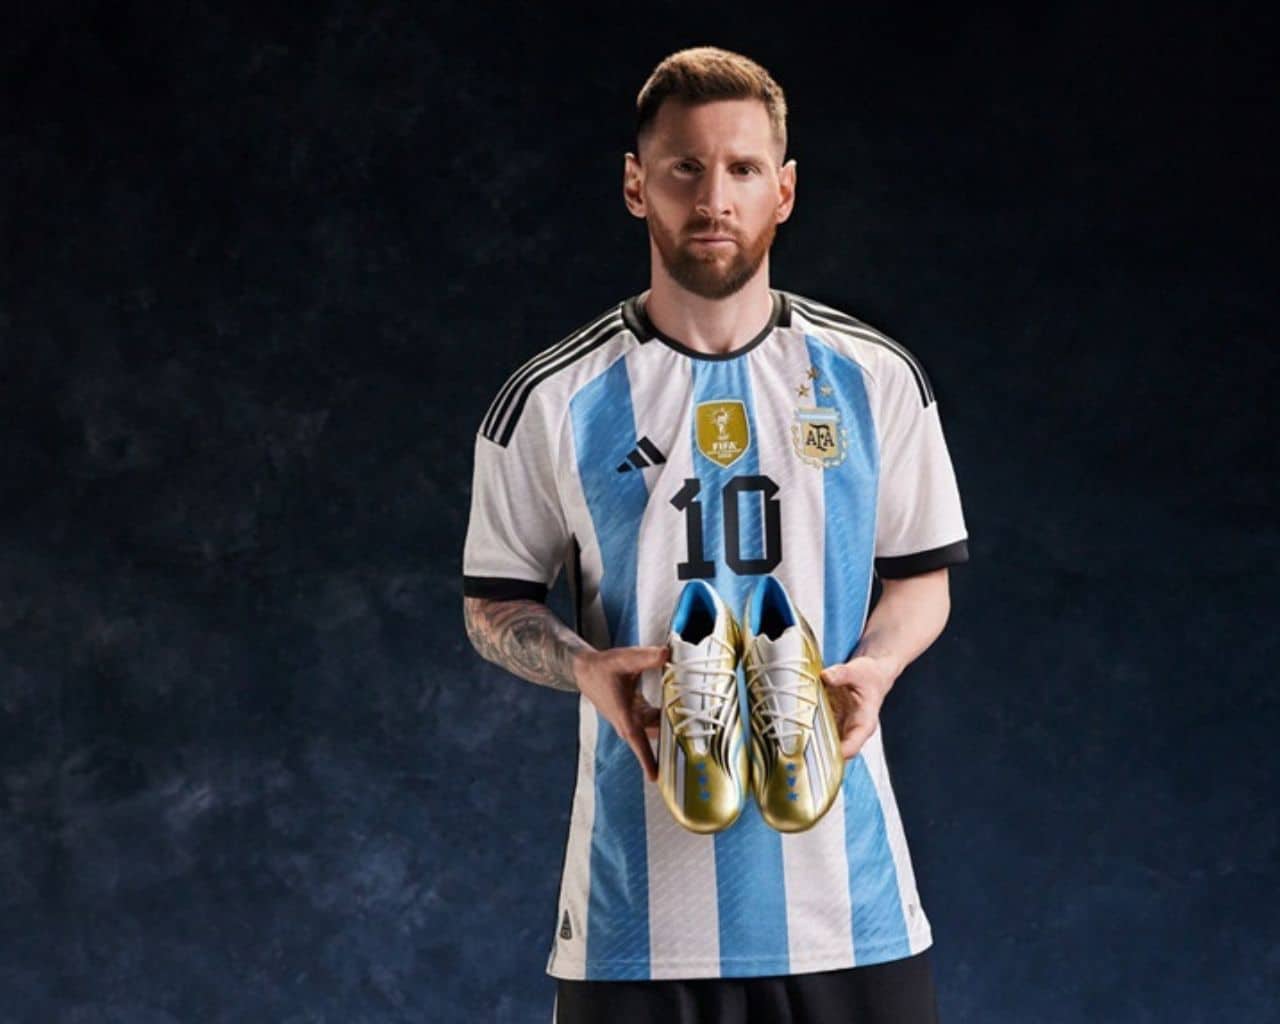 Grapa Artes literarias Inodoro Adidas le regala diseño a Messi por su título con Argentina